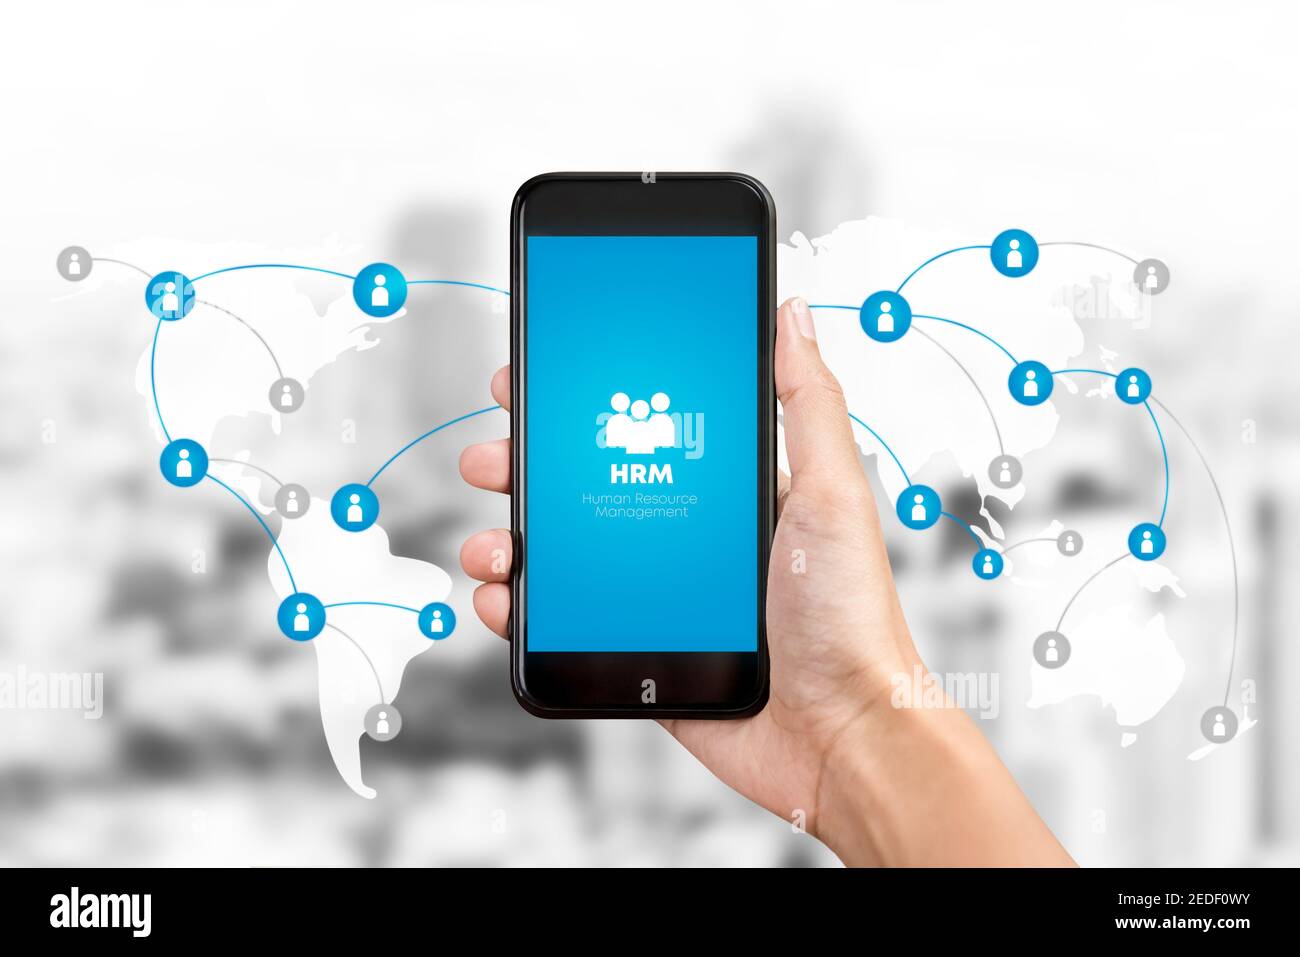 Personalmanagement oder HRM-Anwendung auf dem Smartphone-Bildschirm mit Grafik und Symbole im Hintergrund für weltweite Internetverbindungen Stockfoto